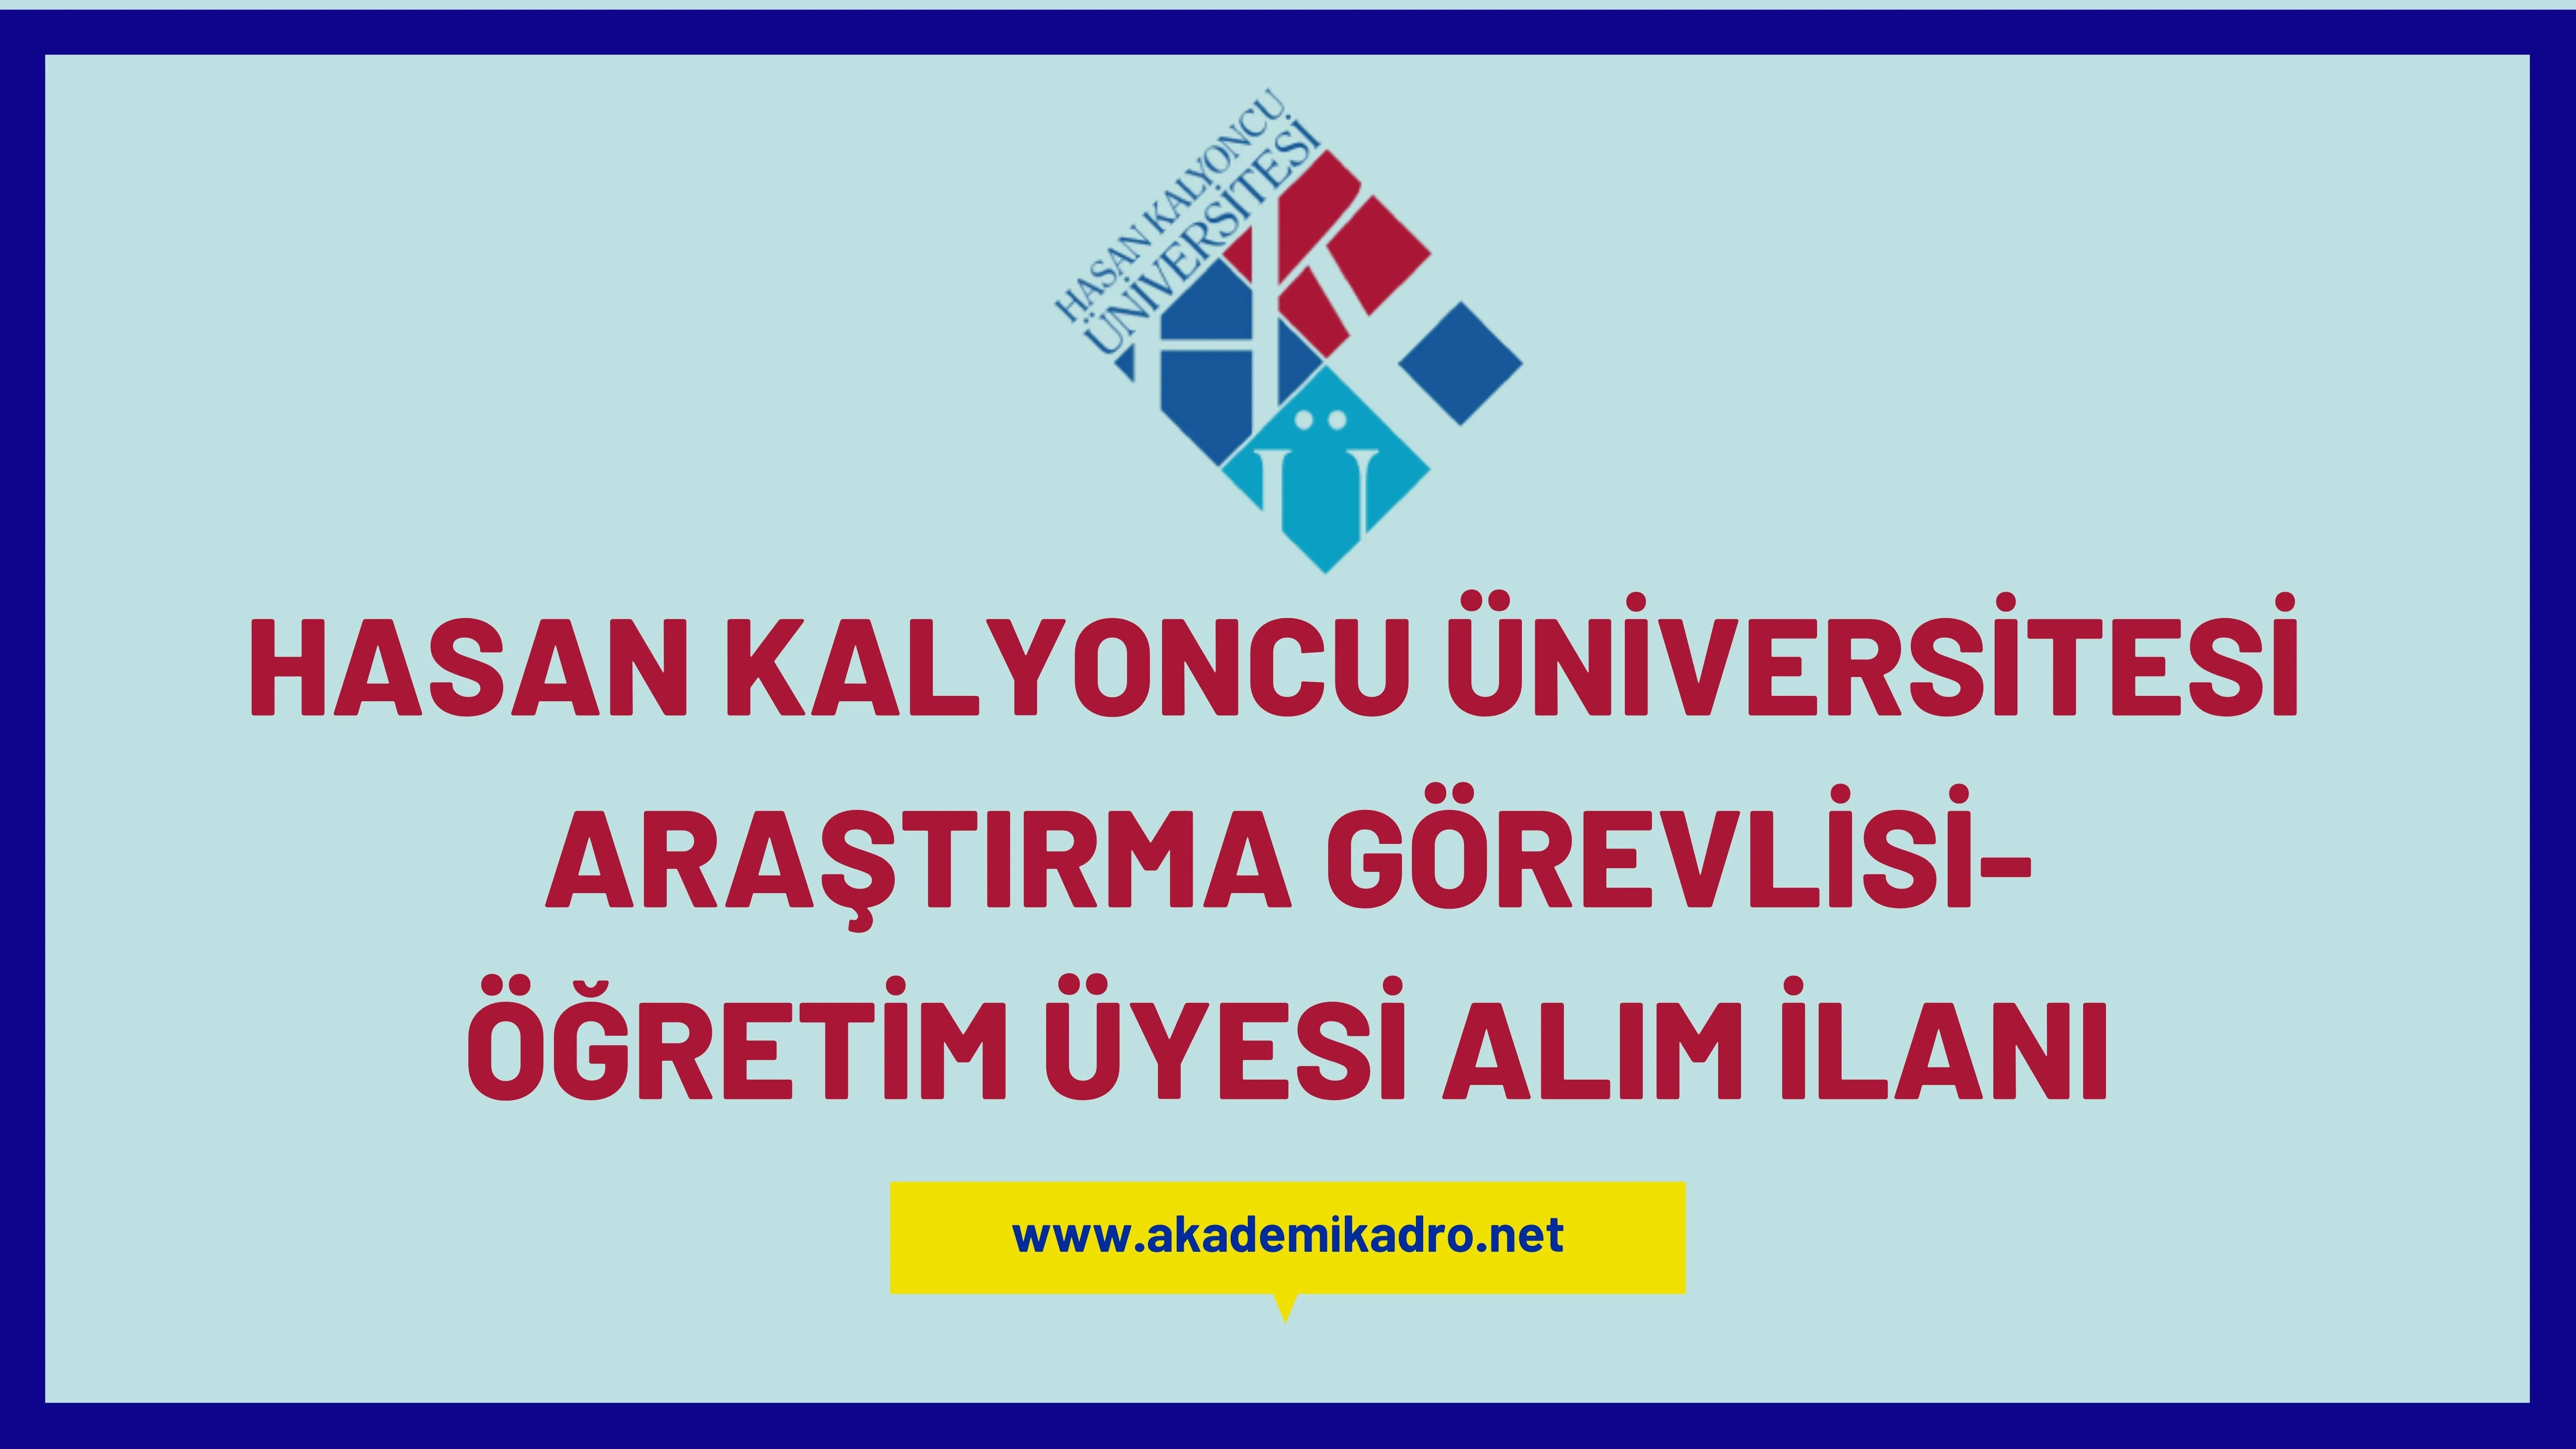 Hasan Kalyoncu Üniversitesi Araştırma görevlisi ve Öğretim üyesi olmak üzere 31 Öğretim elemanı alacak.